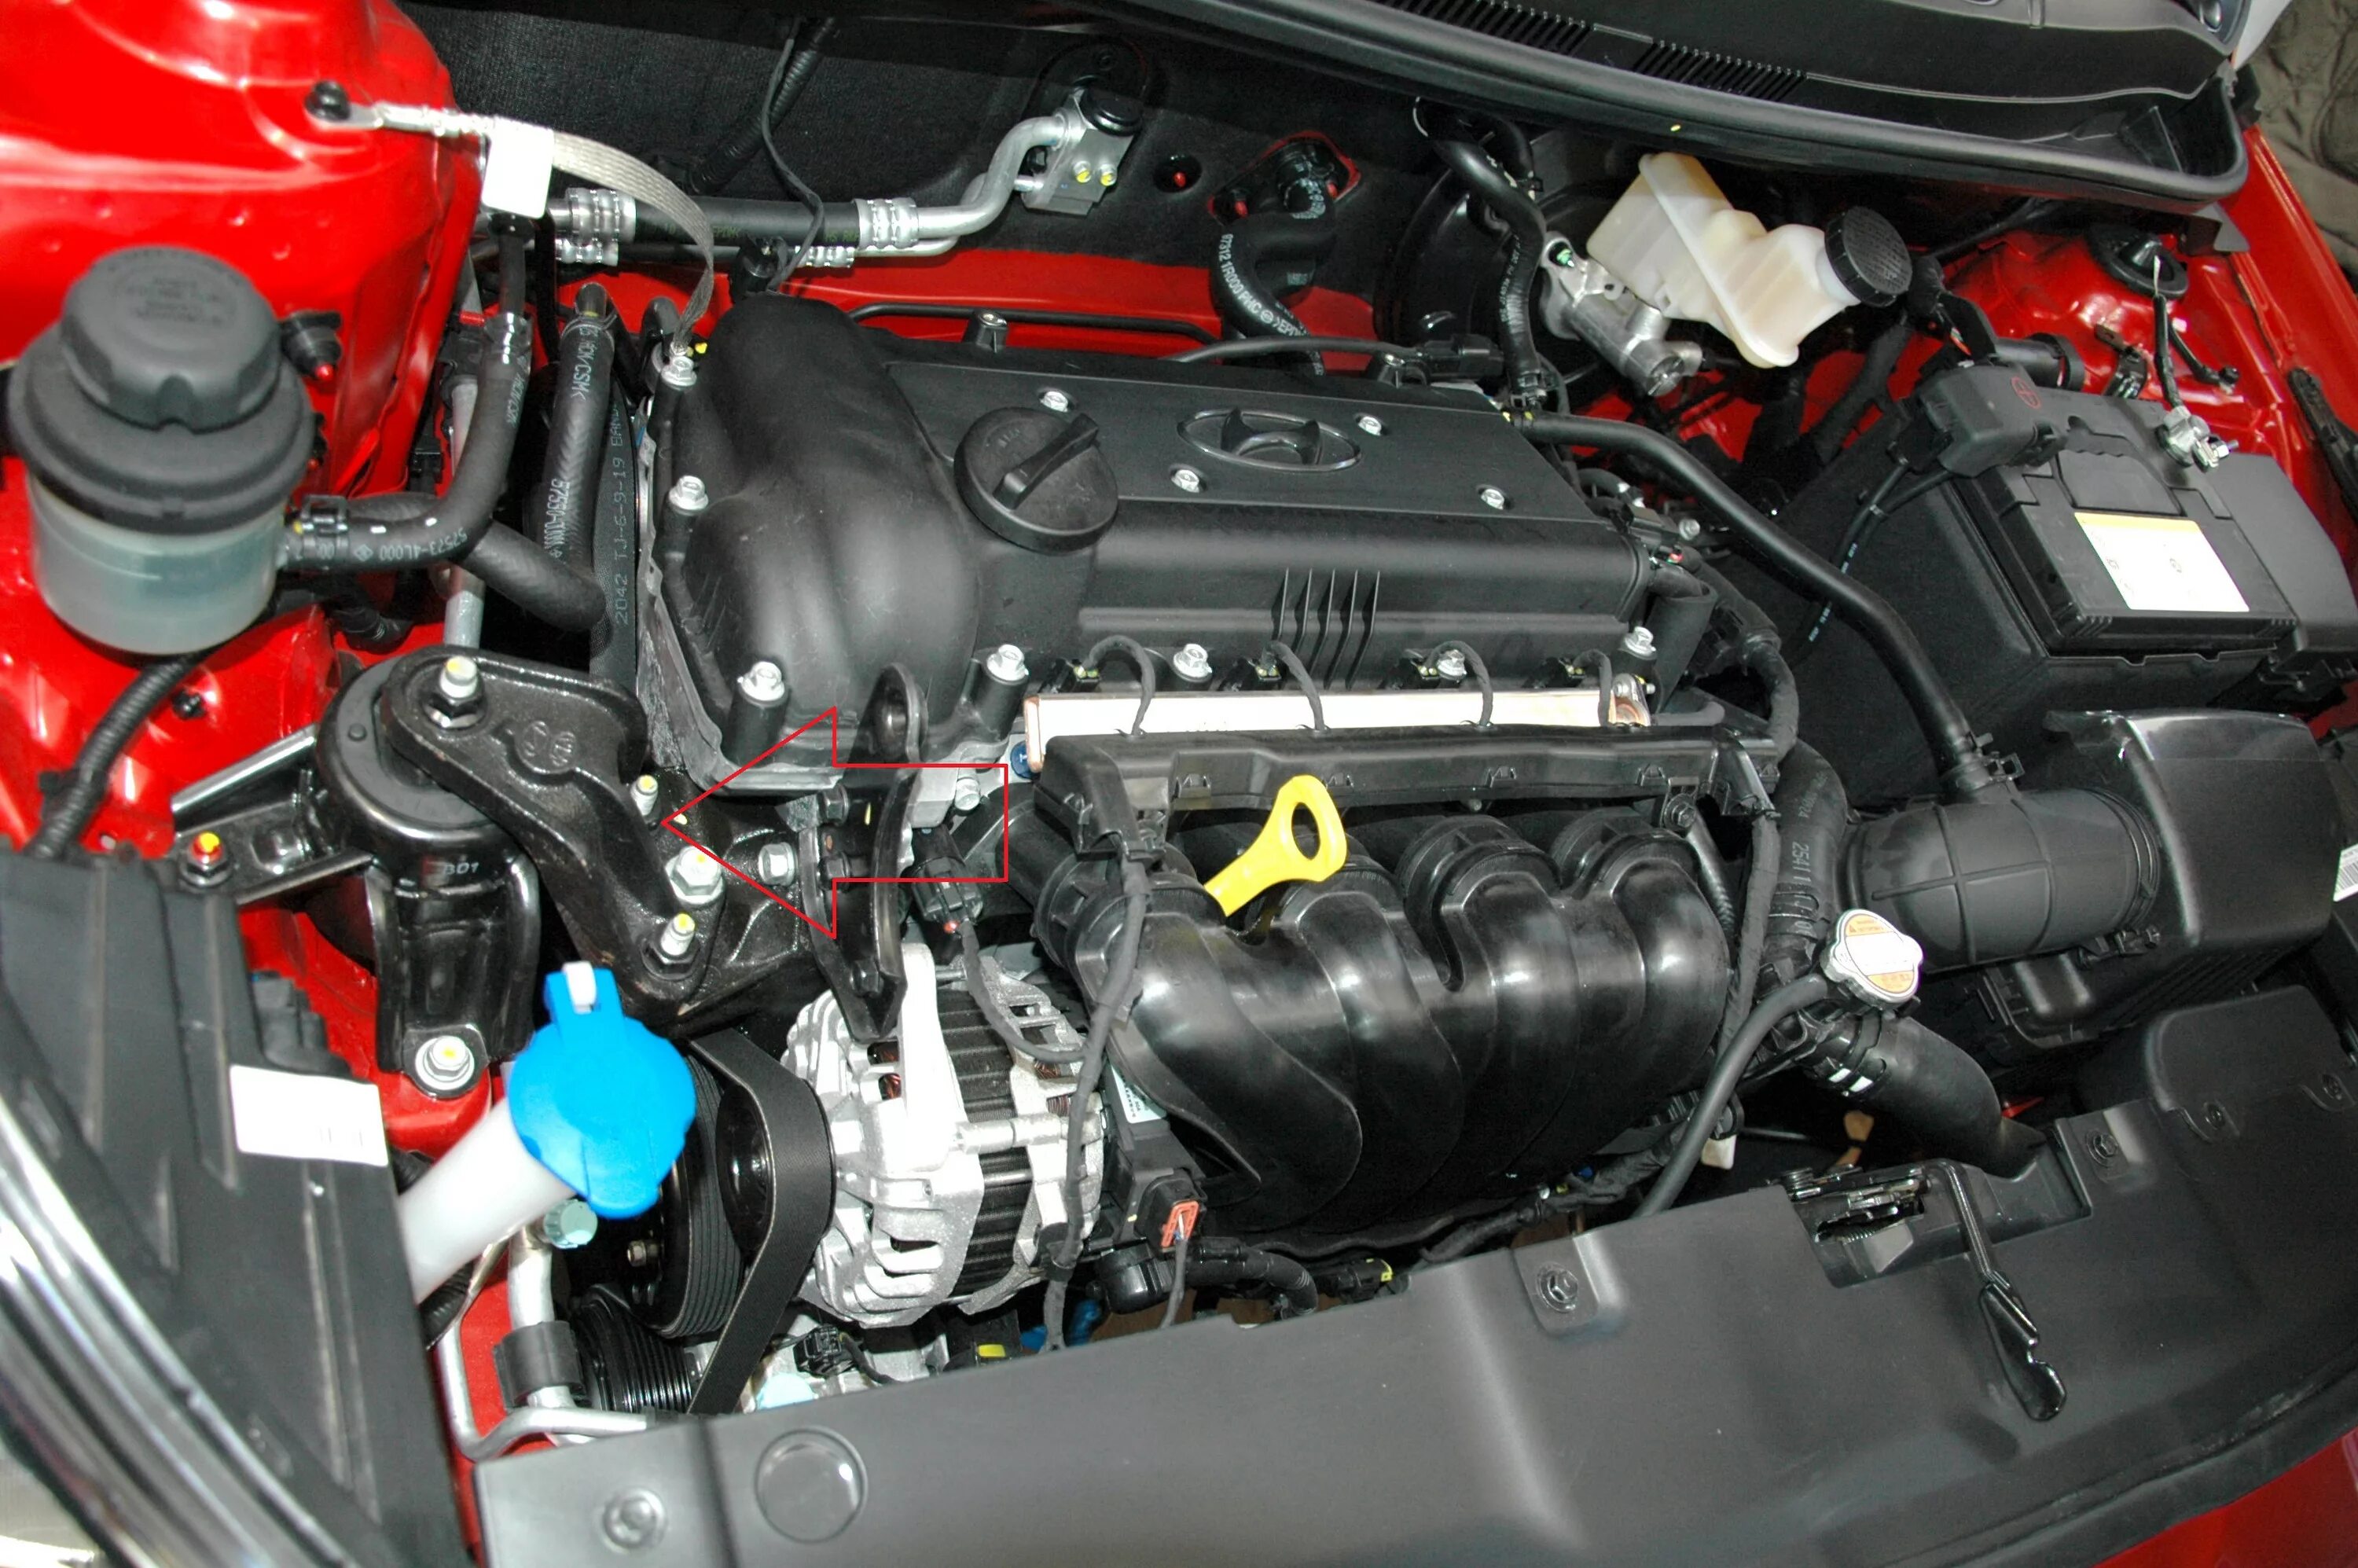 Хендай солярис 2011 двигатель. Hyundai Solaris 2014 двигатель. Двигатель Хендай Солярис 1.6. Двигатель Хендай Солярис 1.4 2011. Мотор Хендай Солярис 1.4.